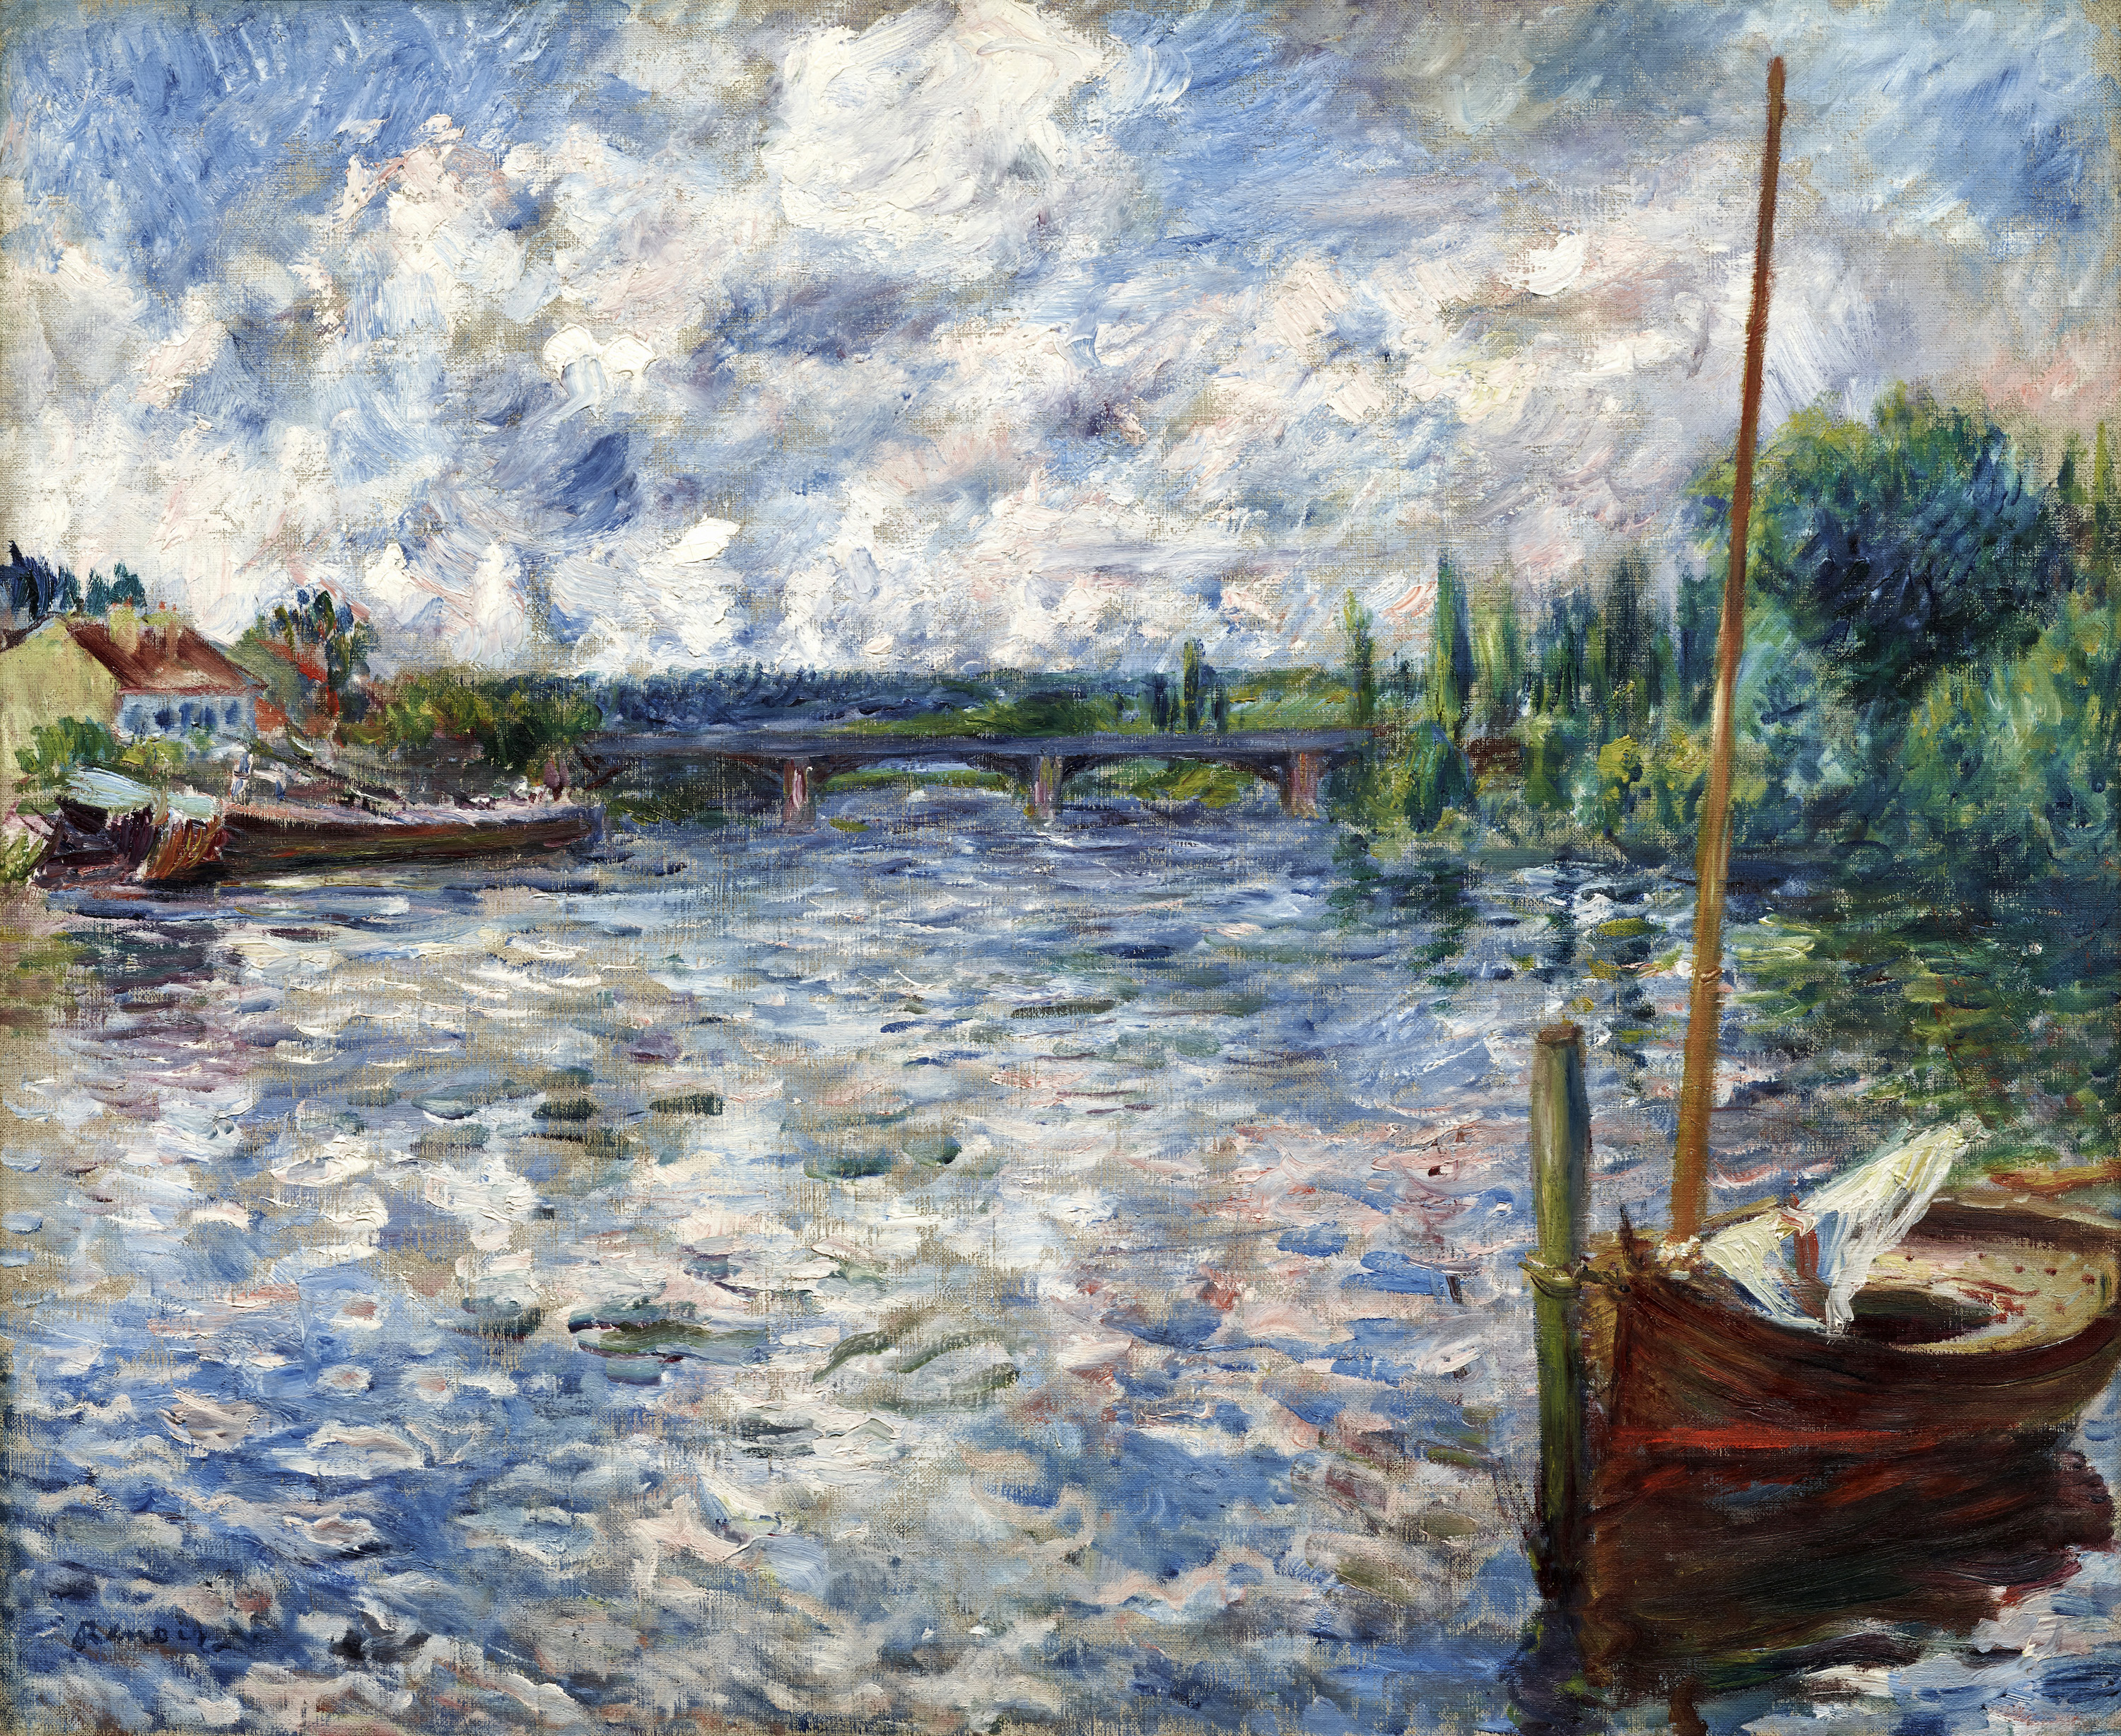 シャトーのセーヌ川 by Pierre-Auguste Renoir - 1874年 - 50.8 x 63.5 cm 